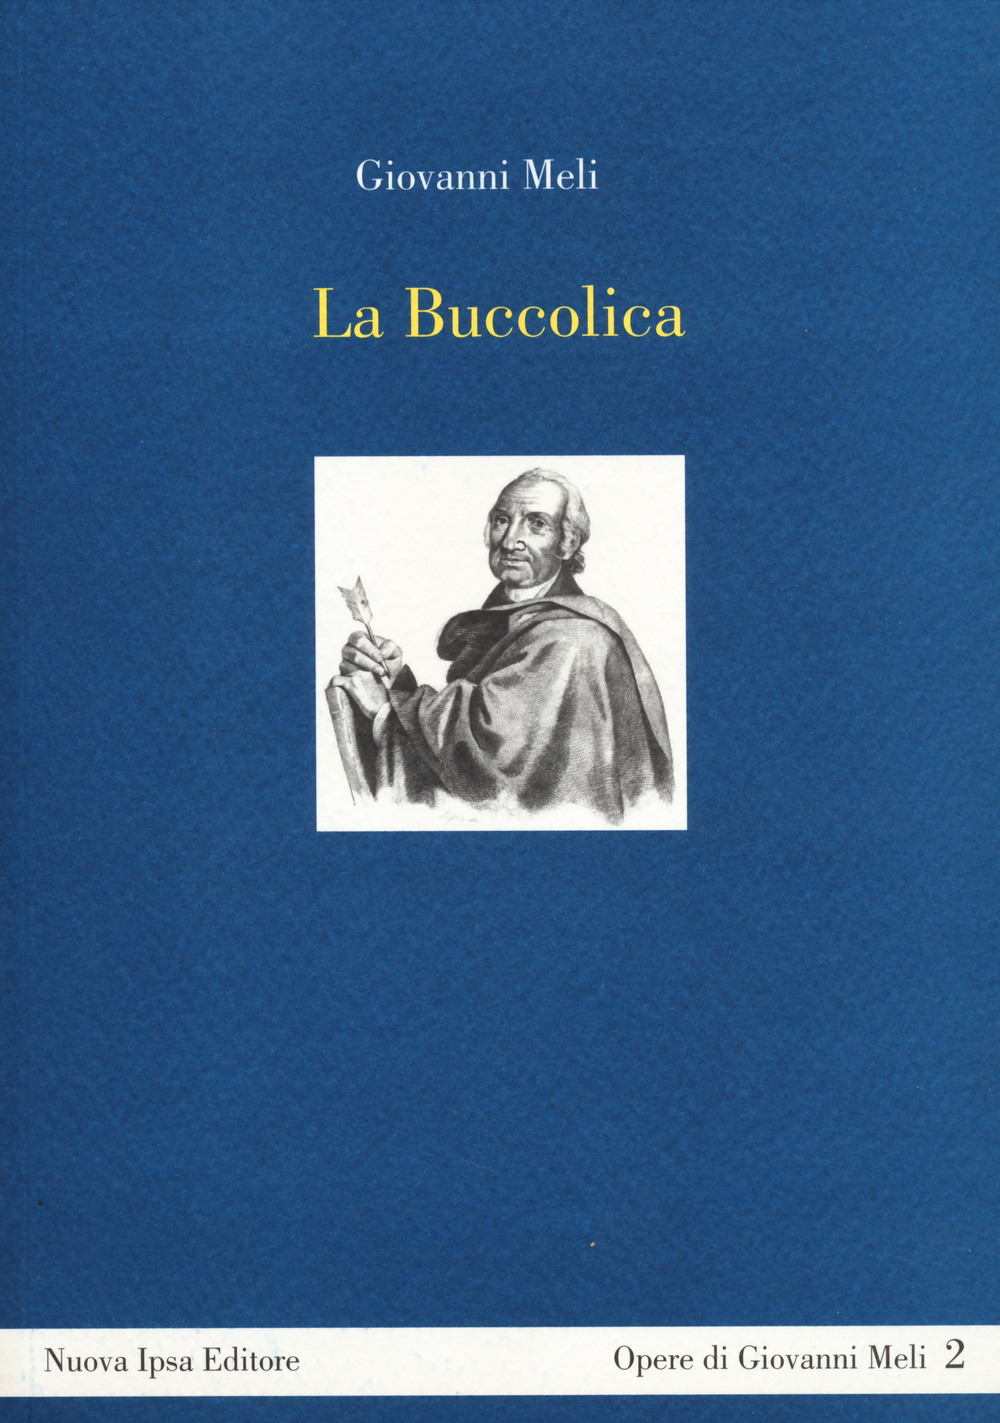 Libri Giovanni Meli - La Buccolica NUOVO SIGILLATO, EDIZIONE DEL 12/02/2014 SUBITO DISPONIBILE